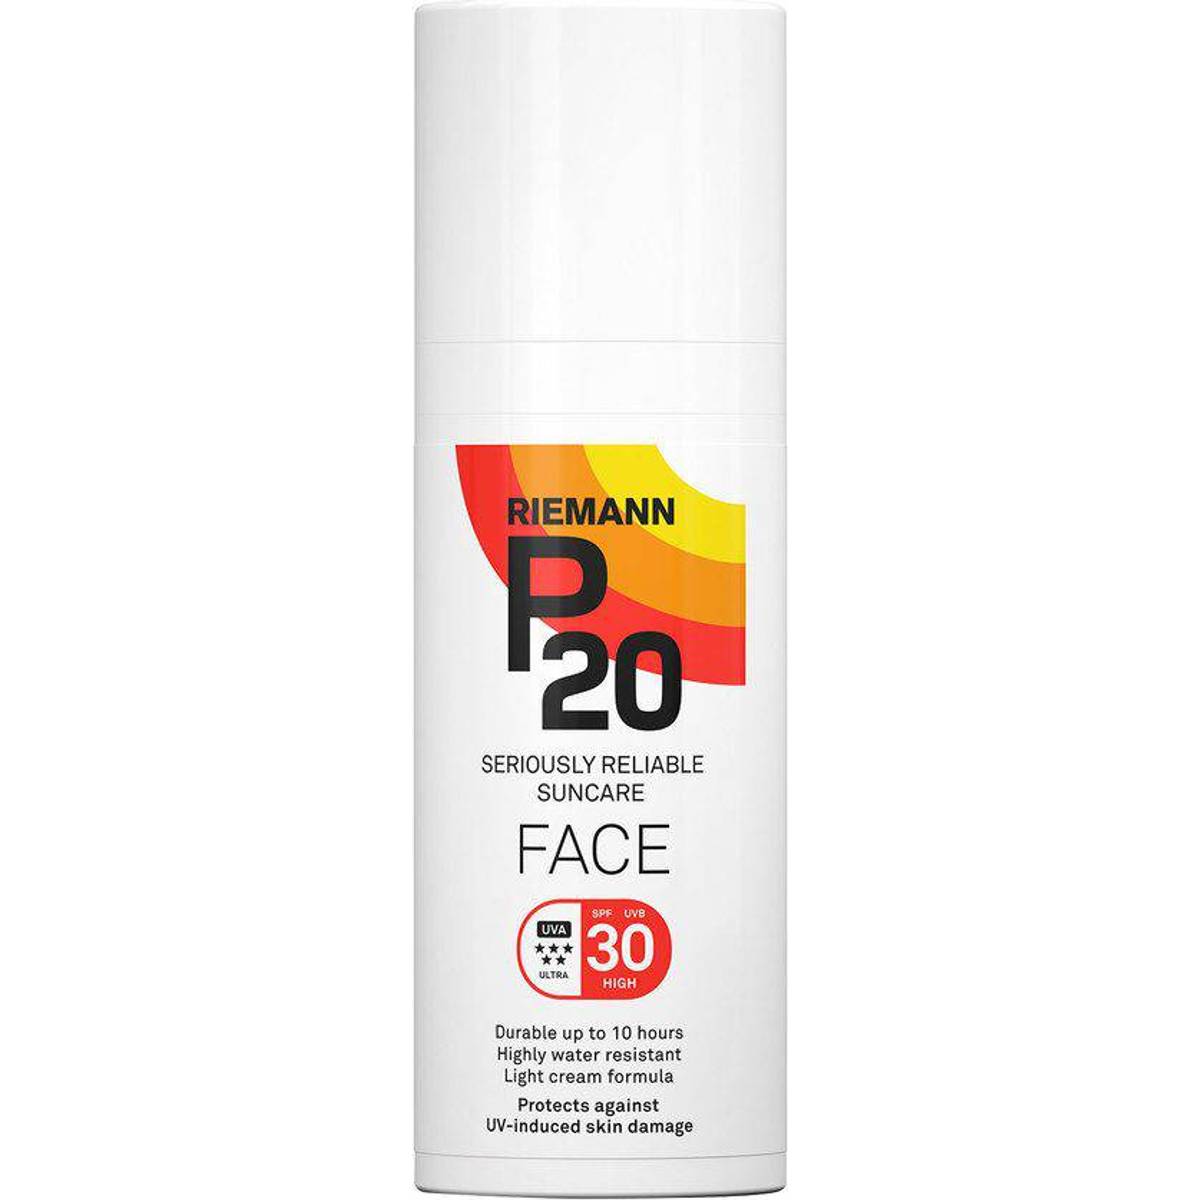 P20 solcreme 50 • Find den billigste pris hos PriceRunner nu »